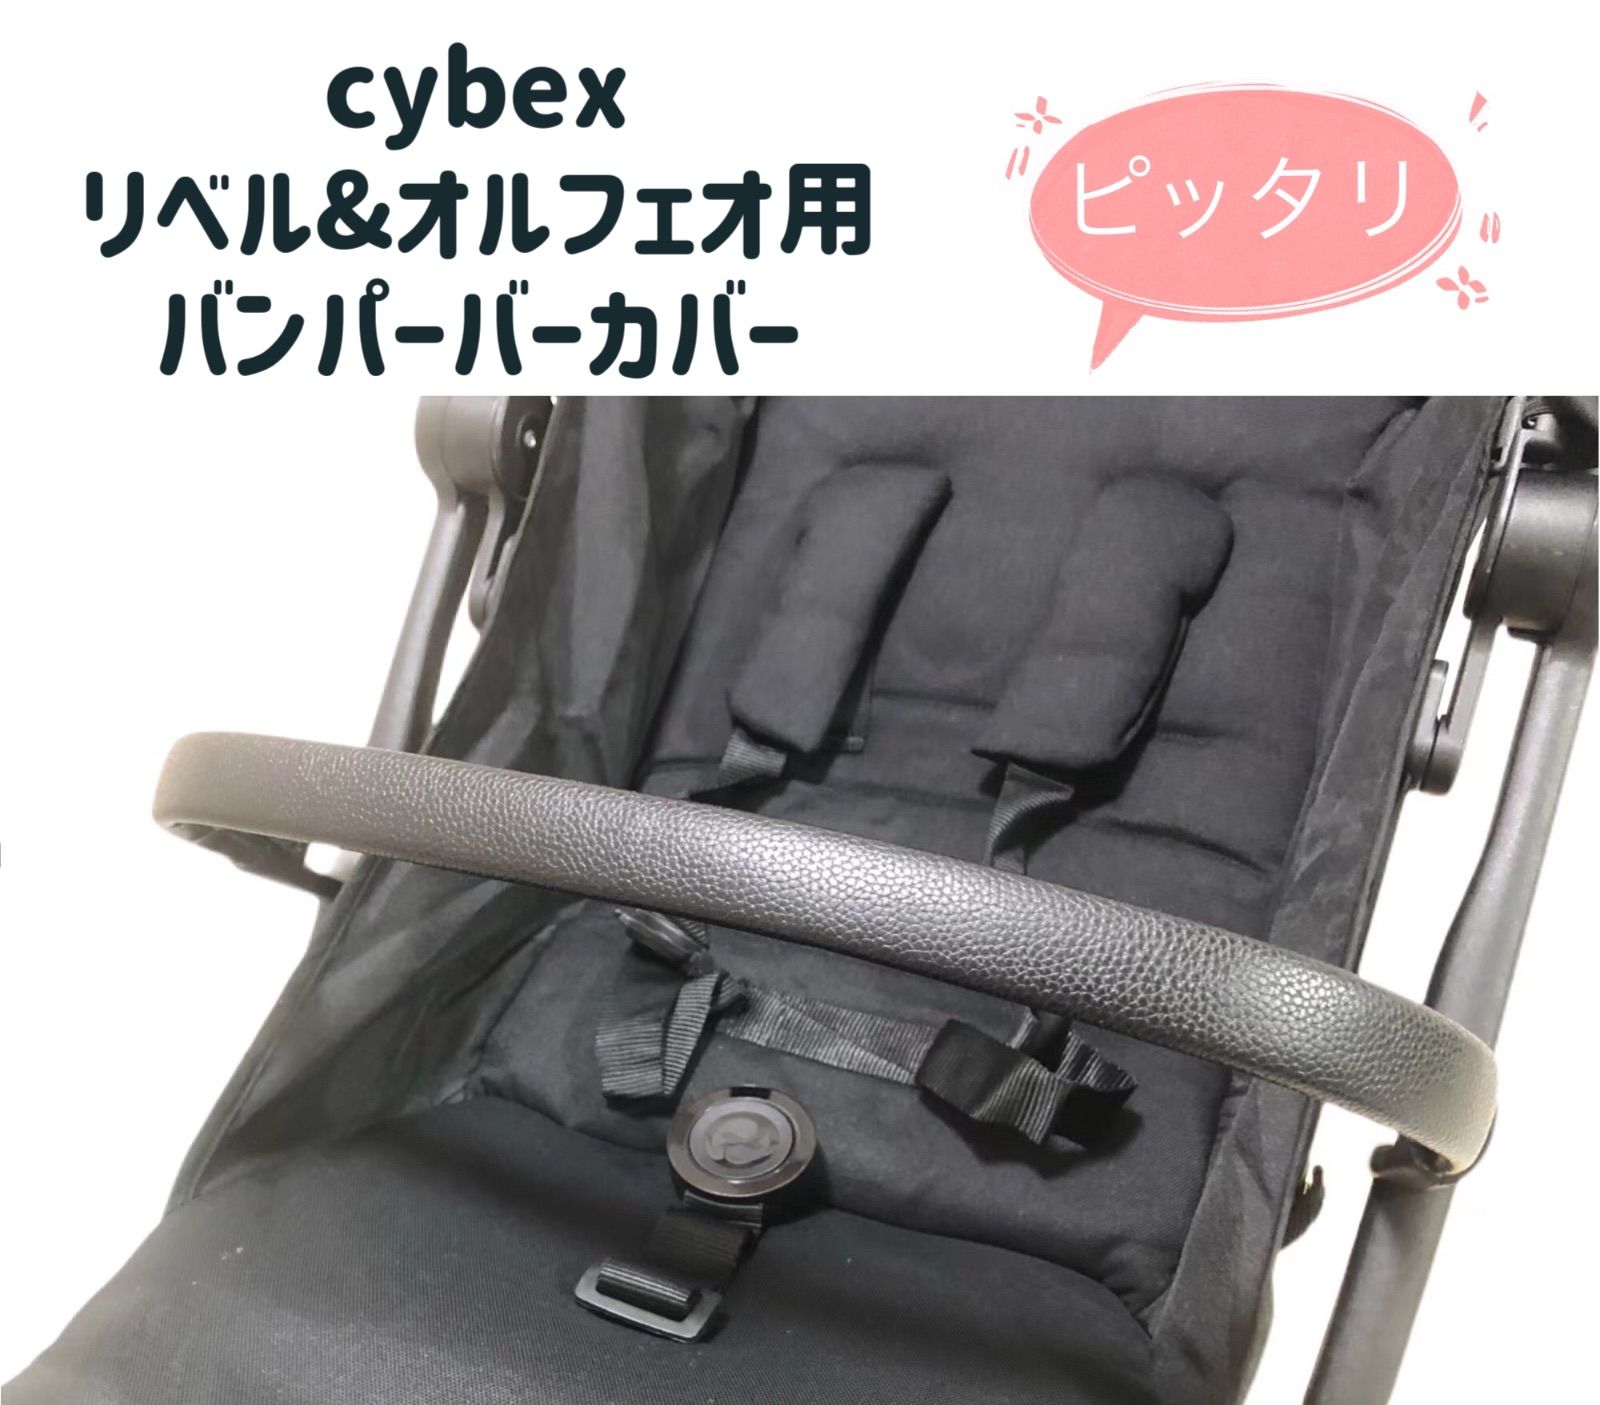 cybex サイベックス リベル & オルフェオ用 バンパーバーカバー 黒 